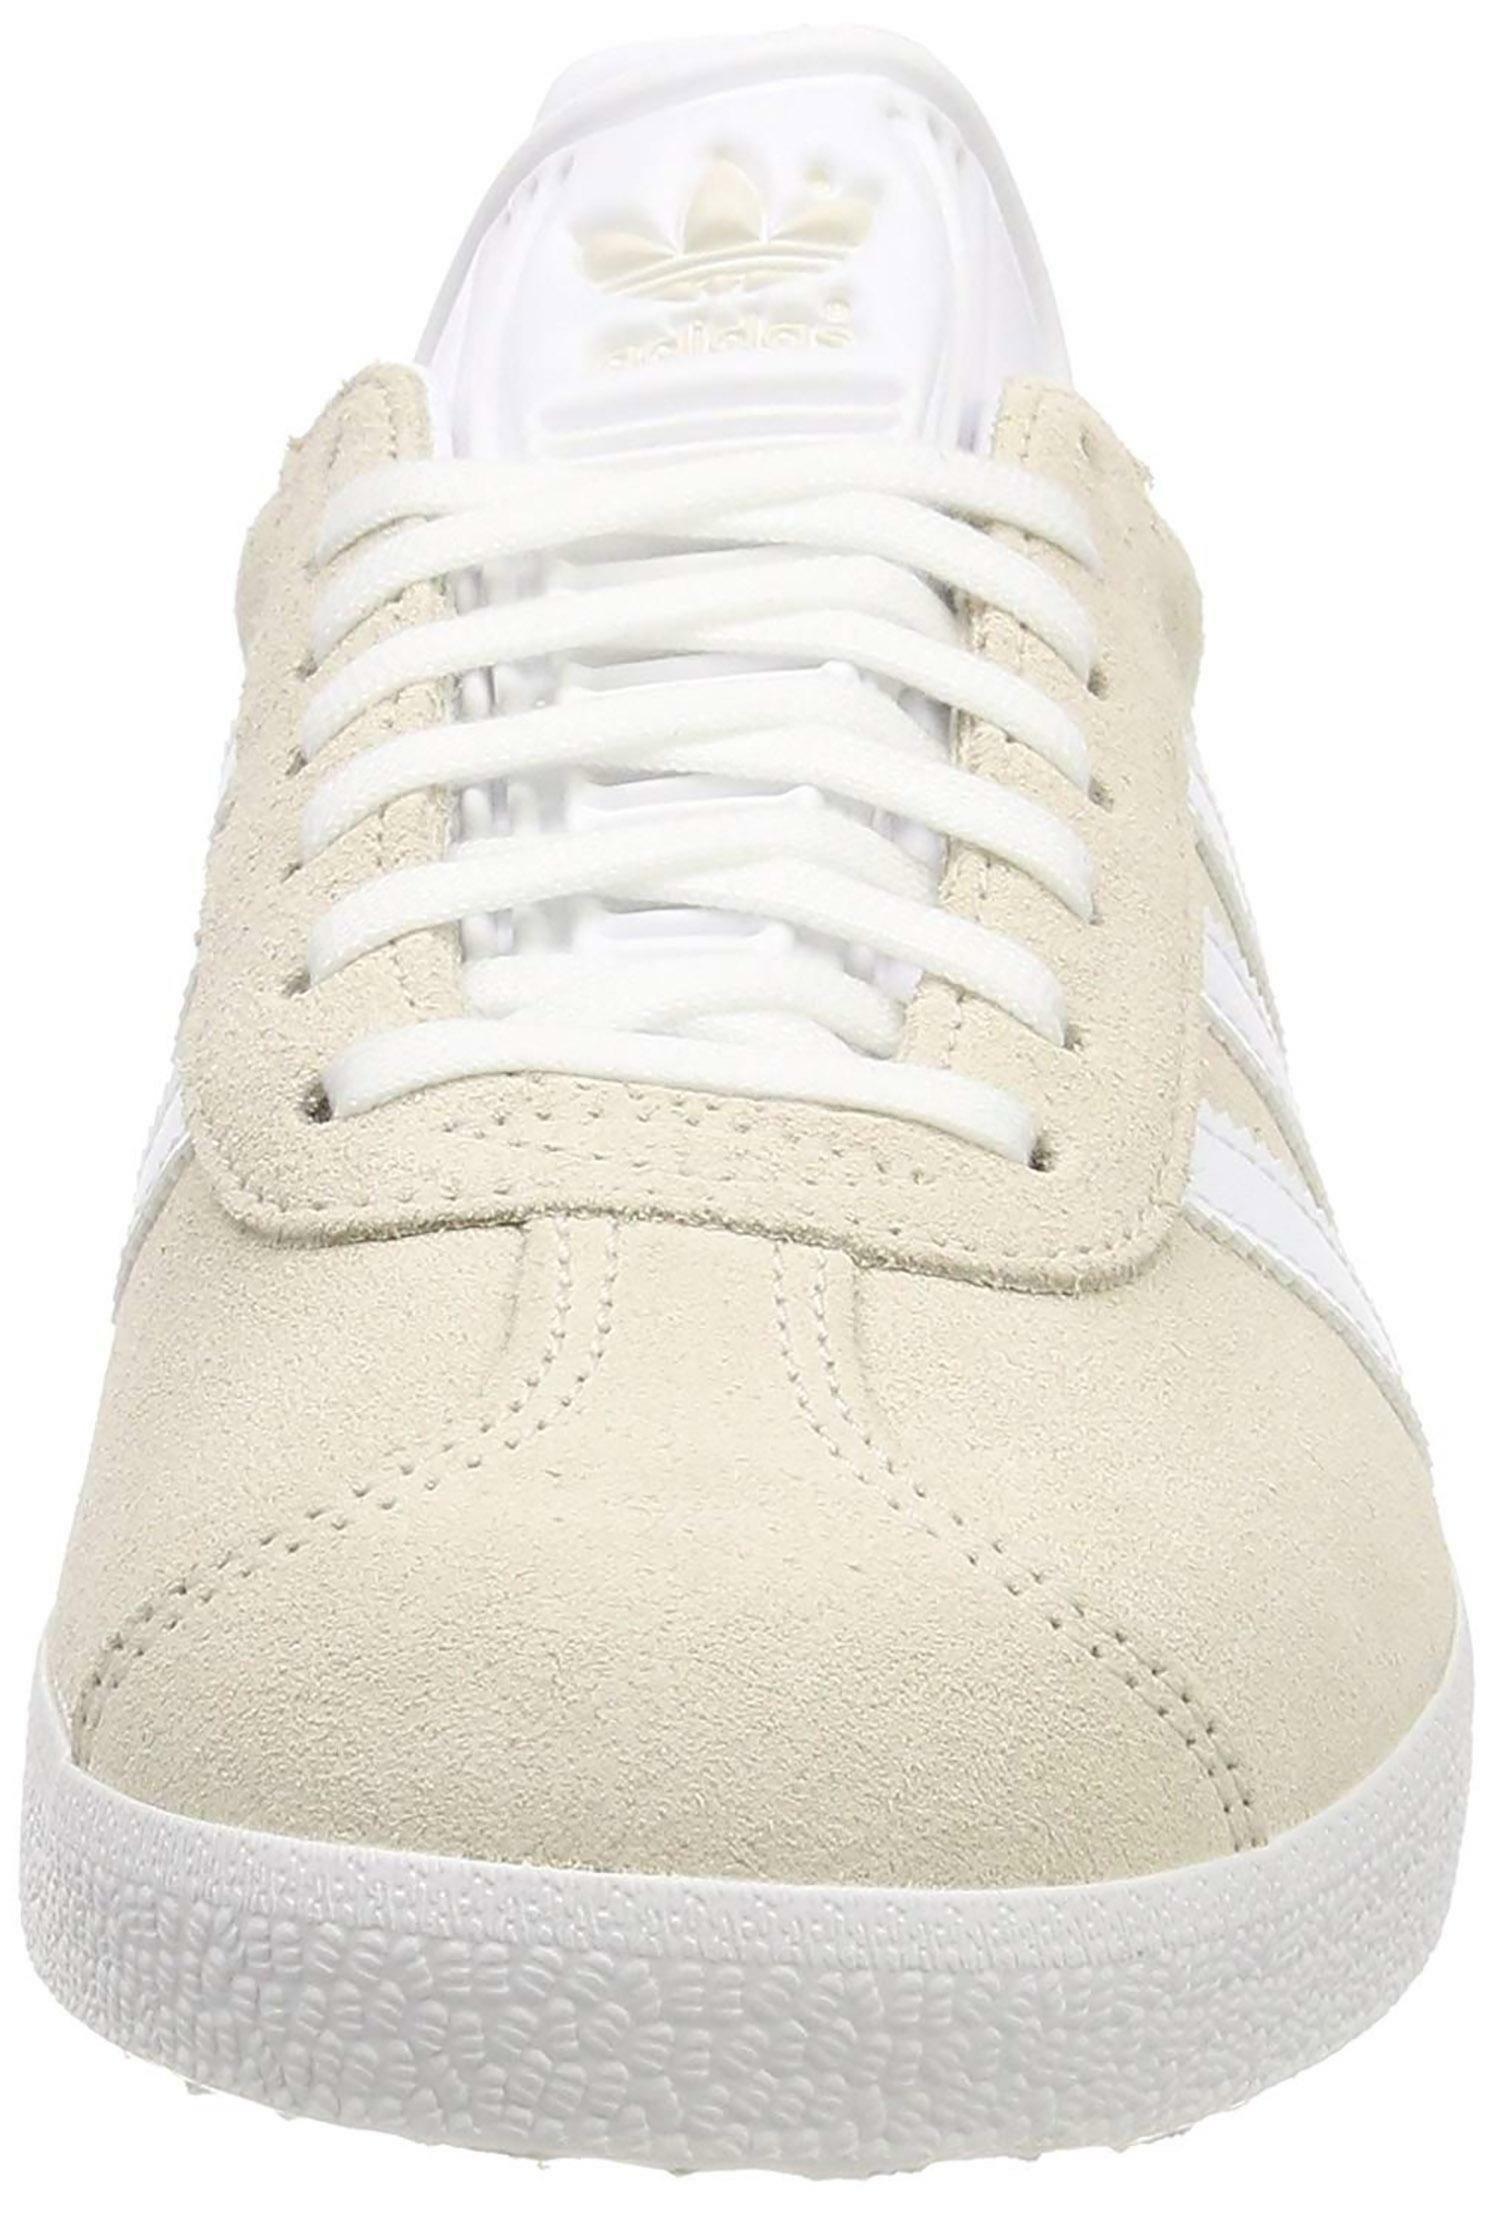 adidas adidas gazelle scarpe sportive beige b41646